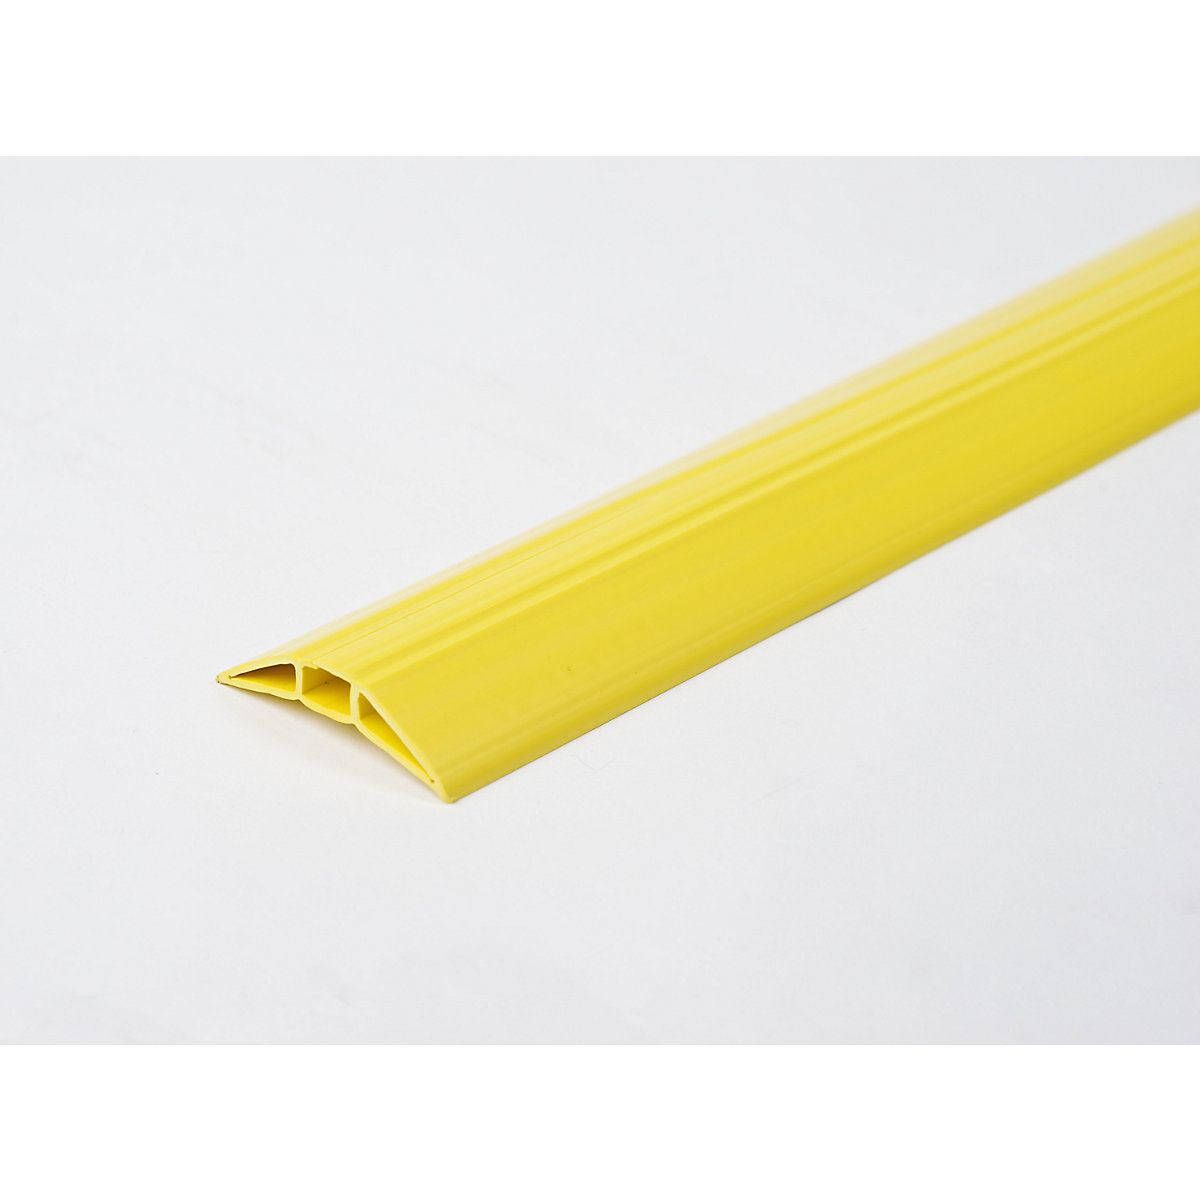 Canaleta para cables de plástico, Toploader, amarilla, longitud 1,5 m